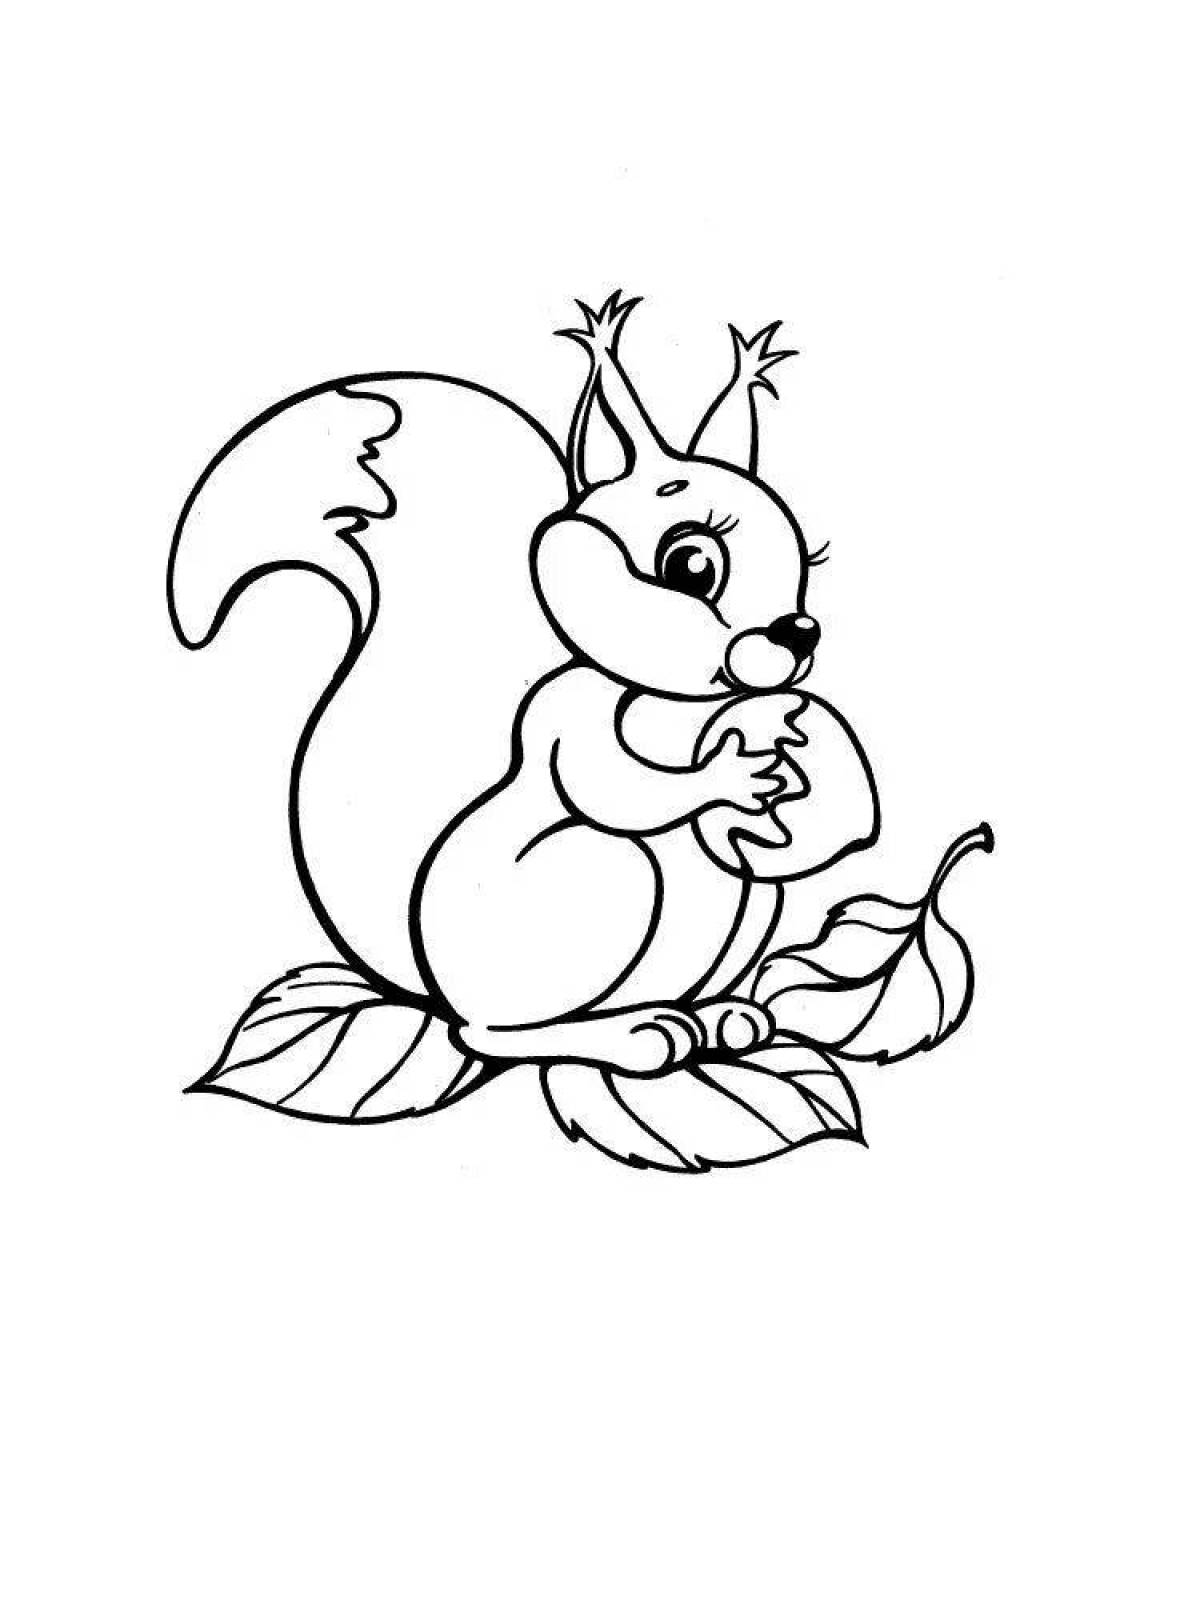 Spicy squirrel coloring image